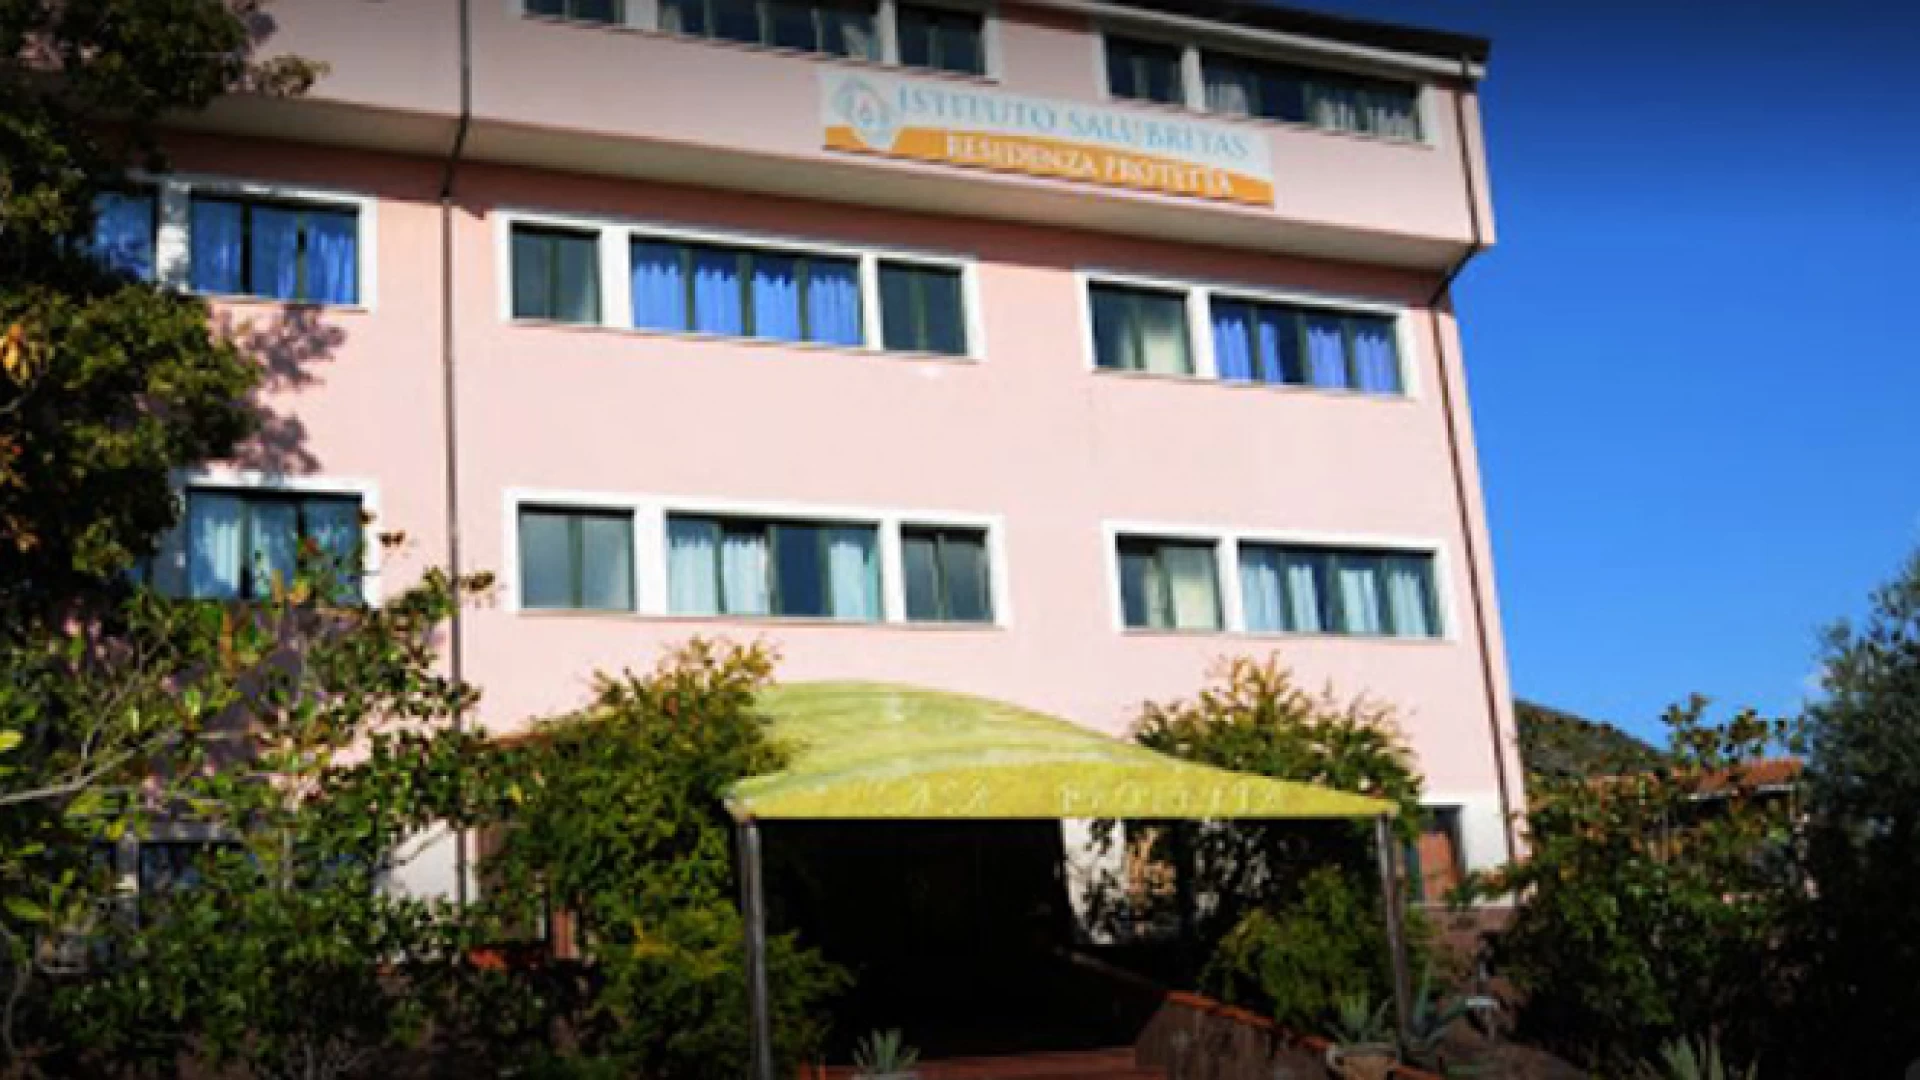 La Rsa-Samnium - Istituto Salubritas cerca un infermiere professionale